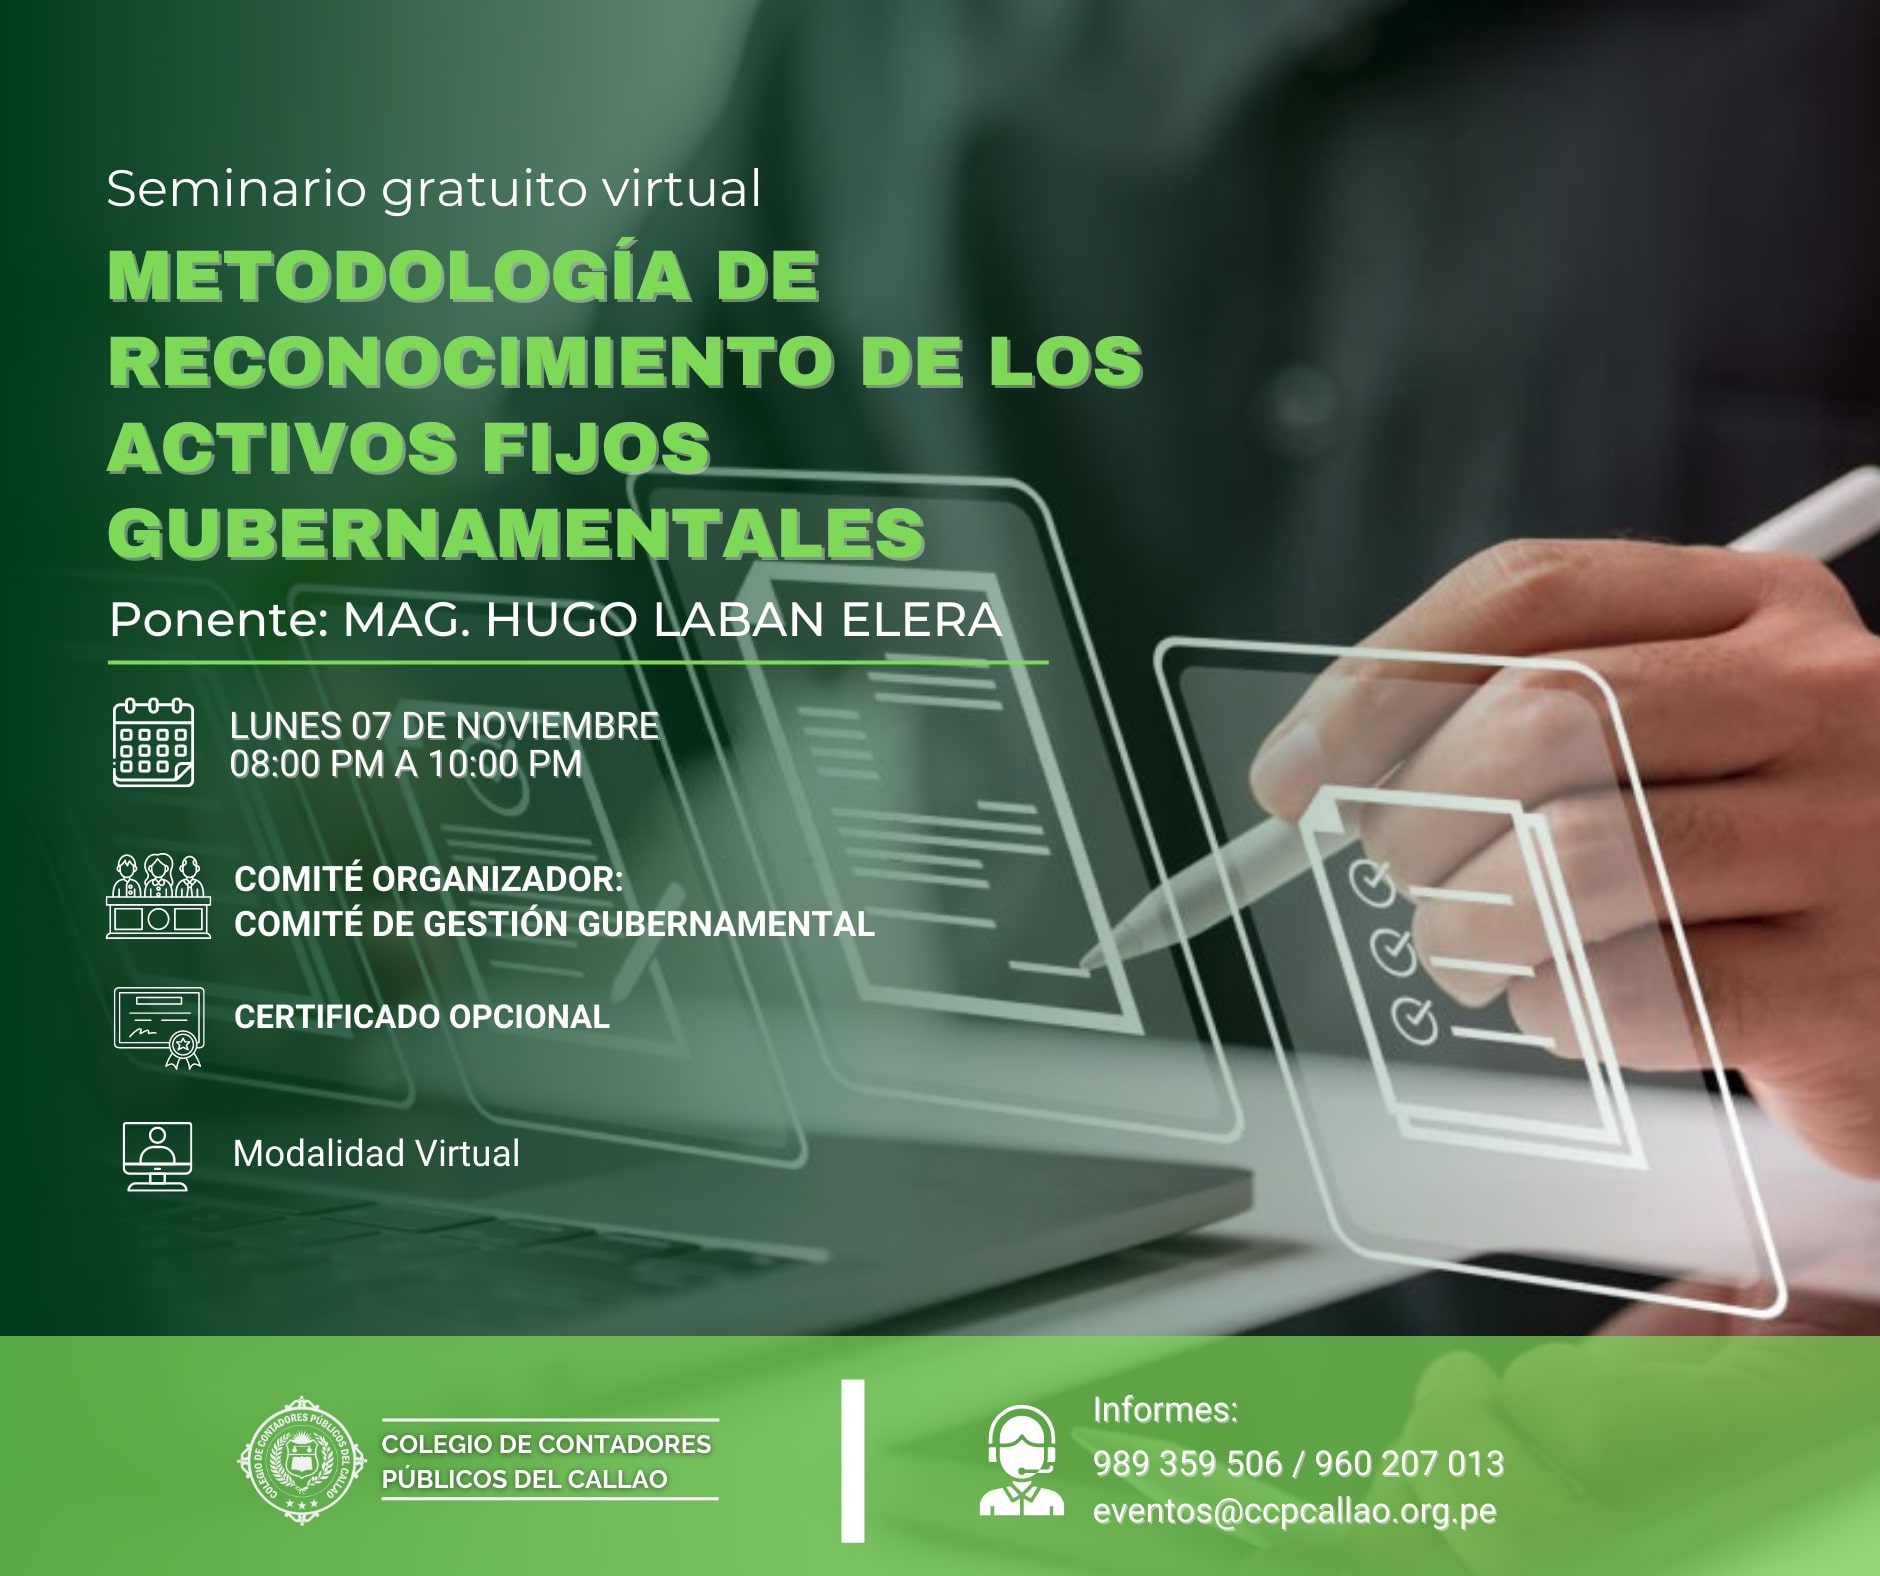 Seminario Gratuito Virtual "METODOLOGÍA DE RECONOCIMIENTO DE LOS ACTIVOS FIJOS GUBERNAMENTALES"